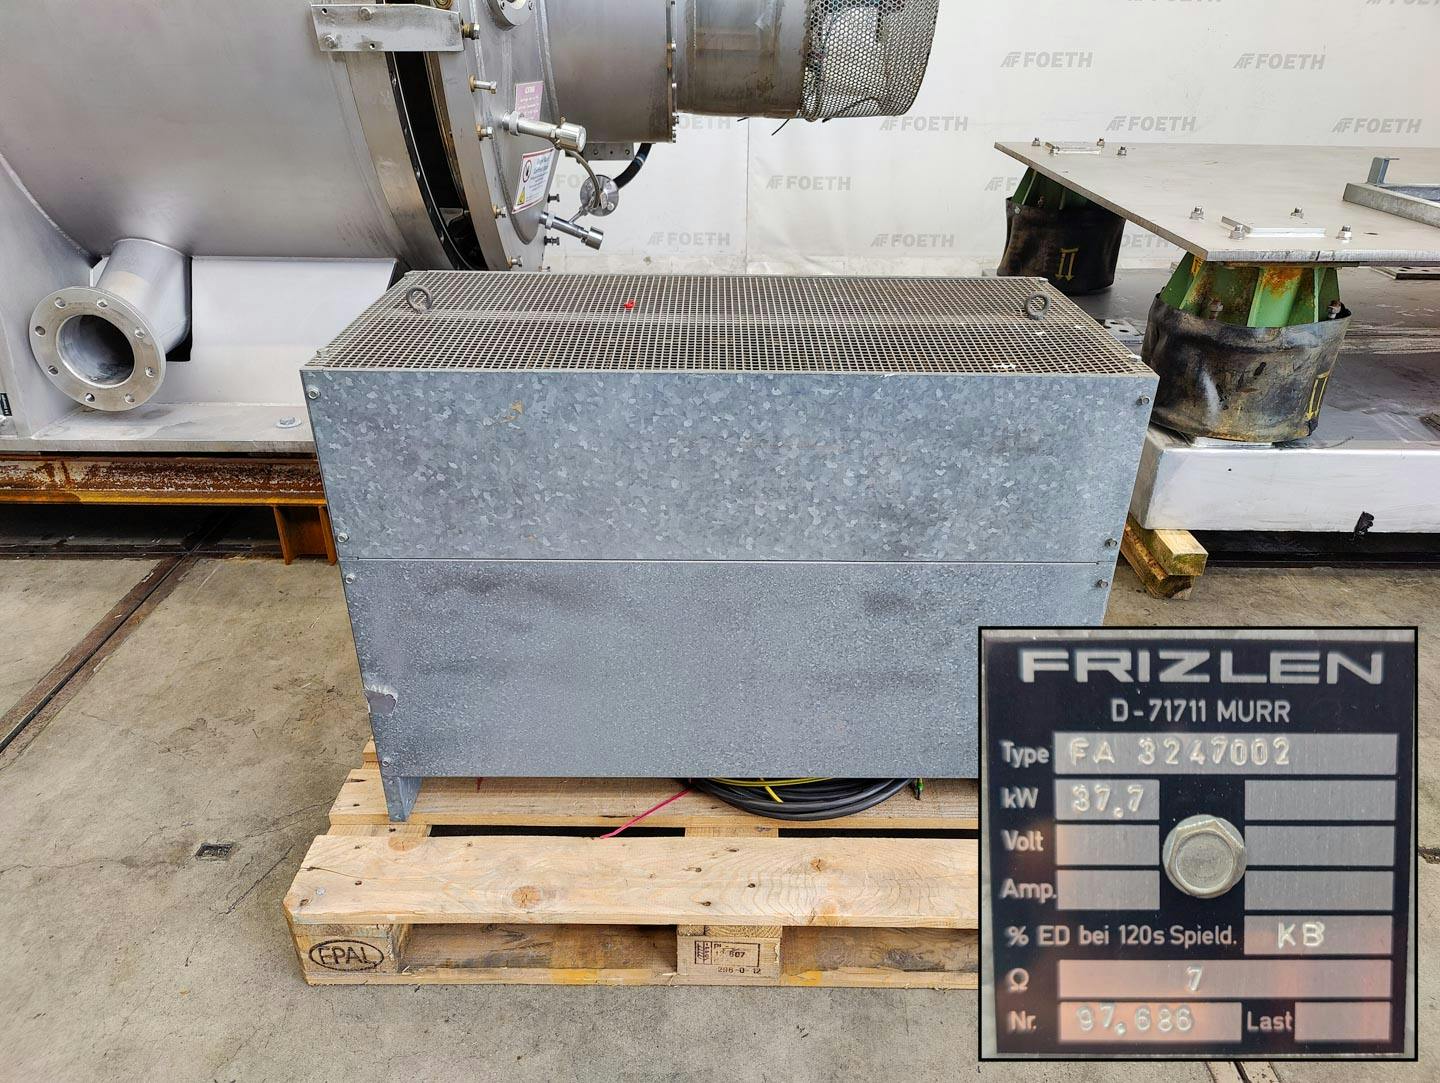 Fima Process Trockner TZT-1300 - centrifuge dryer - Trommelcentrifuge - image 10